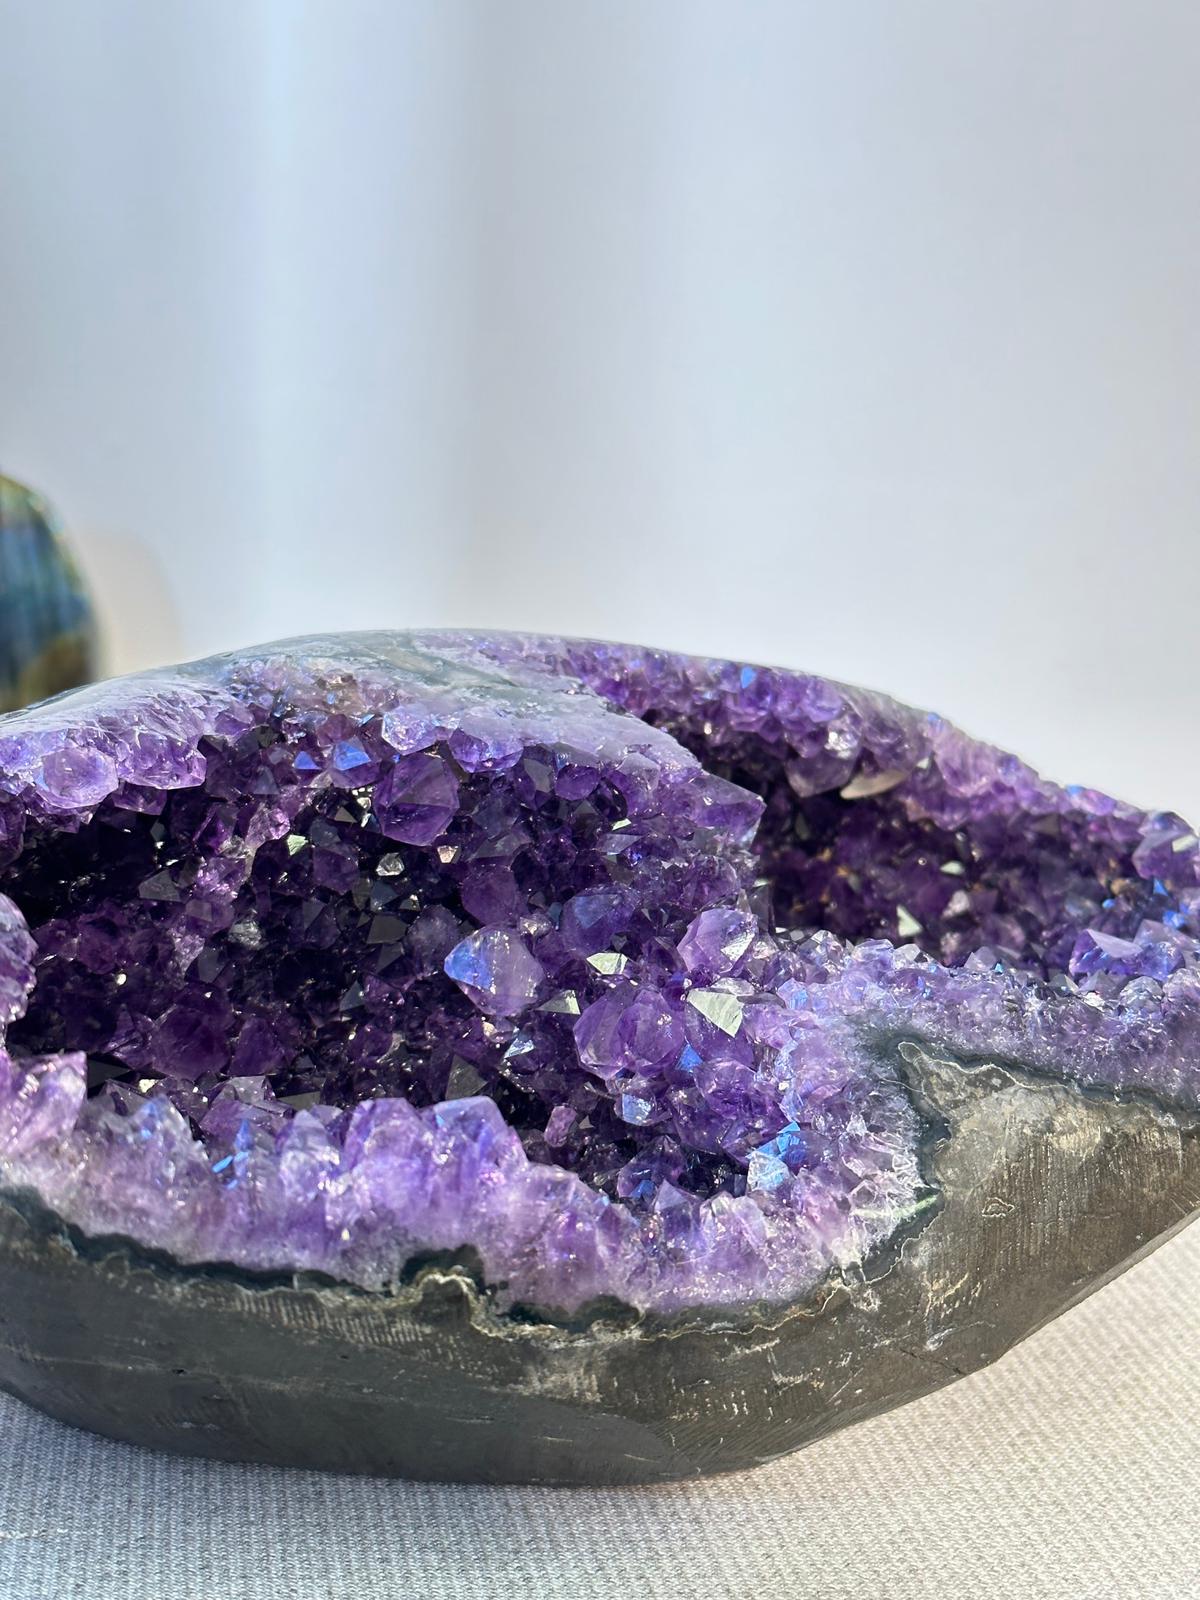 4.4KG 收藏級烏拉圭雙孔帝王紫紫晶洞 𝐄𝐱𝐜𝐞𝐥𝐥𝐞𝐧𝐭 𝐪𝐮𝐚𝐥𝐢𝐭𝐲 𝐔𝐫𝐮𝐠𝐮𝐚𝐲  𝐀𝐦𝐞𝐭𝐡𝐲𝐬𝐭 𝐆𝐞𝐨𝐝𝐞